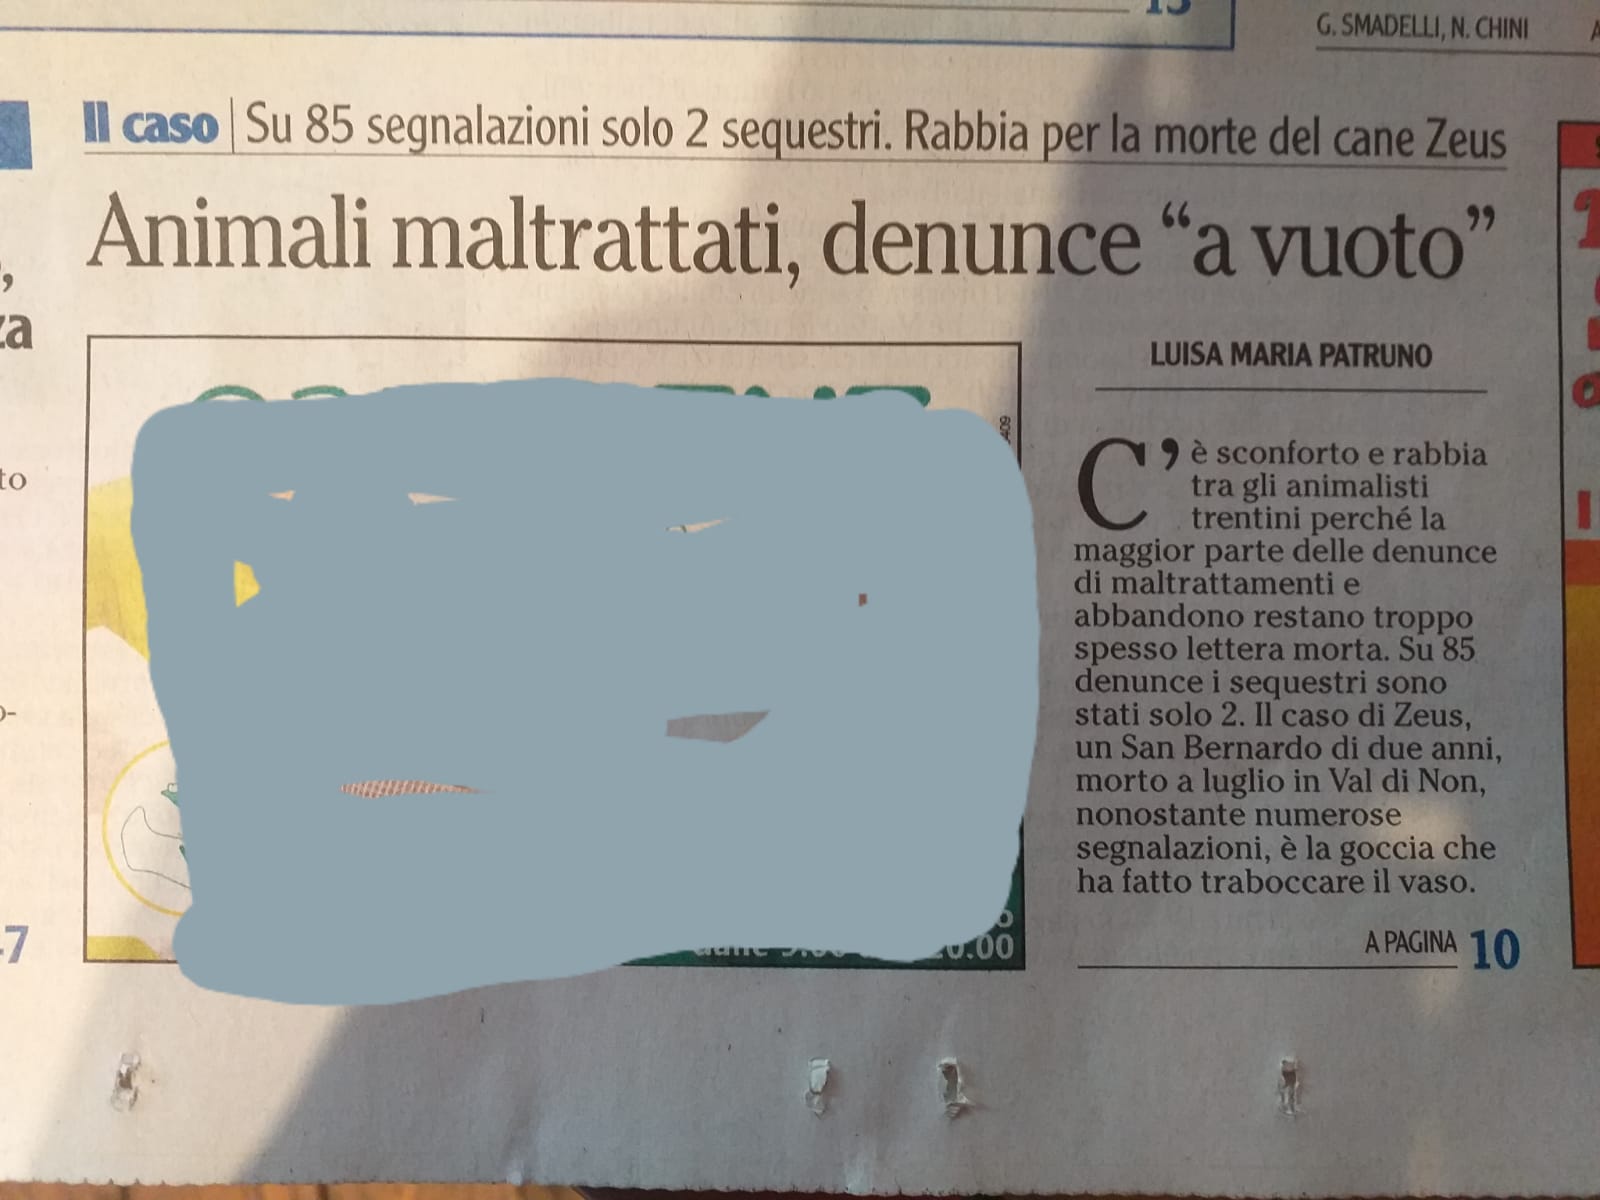 Cani maltrattati, solo 2 sequestri su 85 segnalazioni (L'Adige) WhatsApp Image 2019 09 23 at 14.19.14